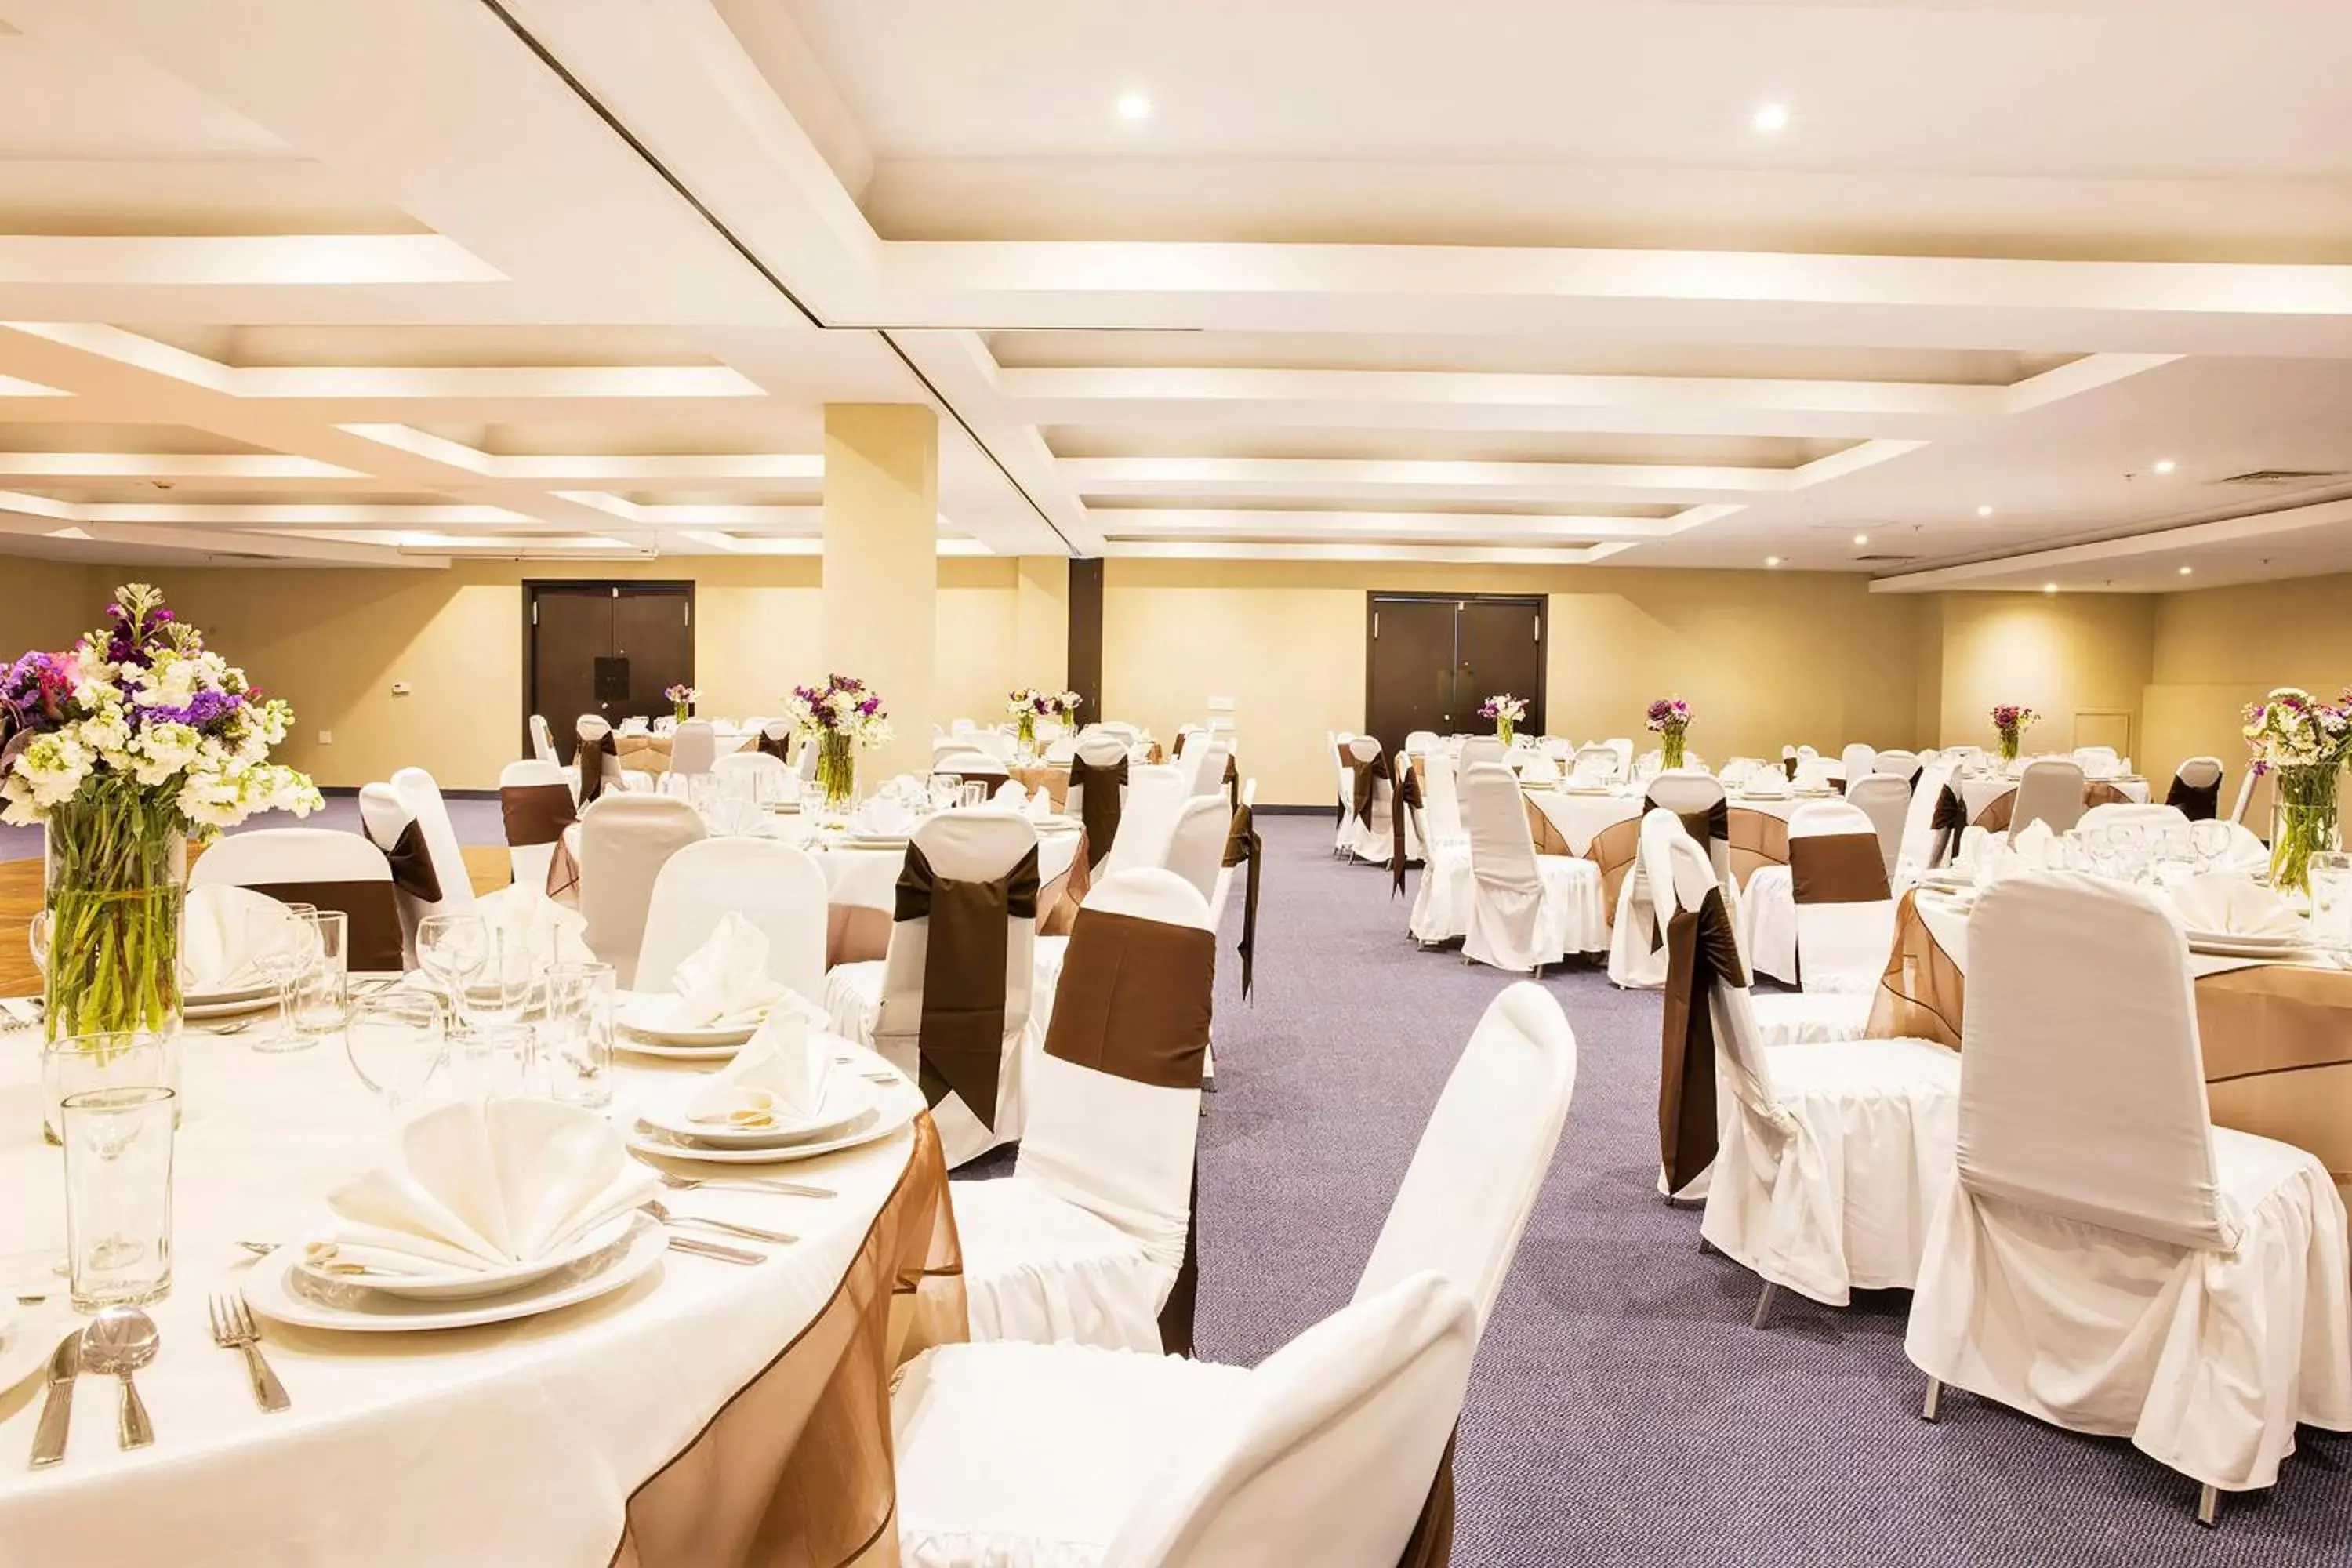 Meeting/conference room, Banquet Facilities in Krystal Urban Aeropuerto Ciudad de Mexico